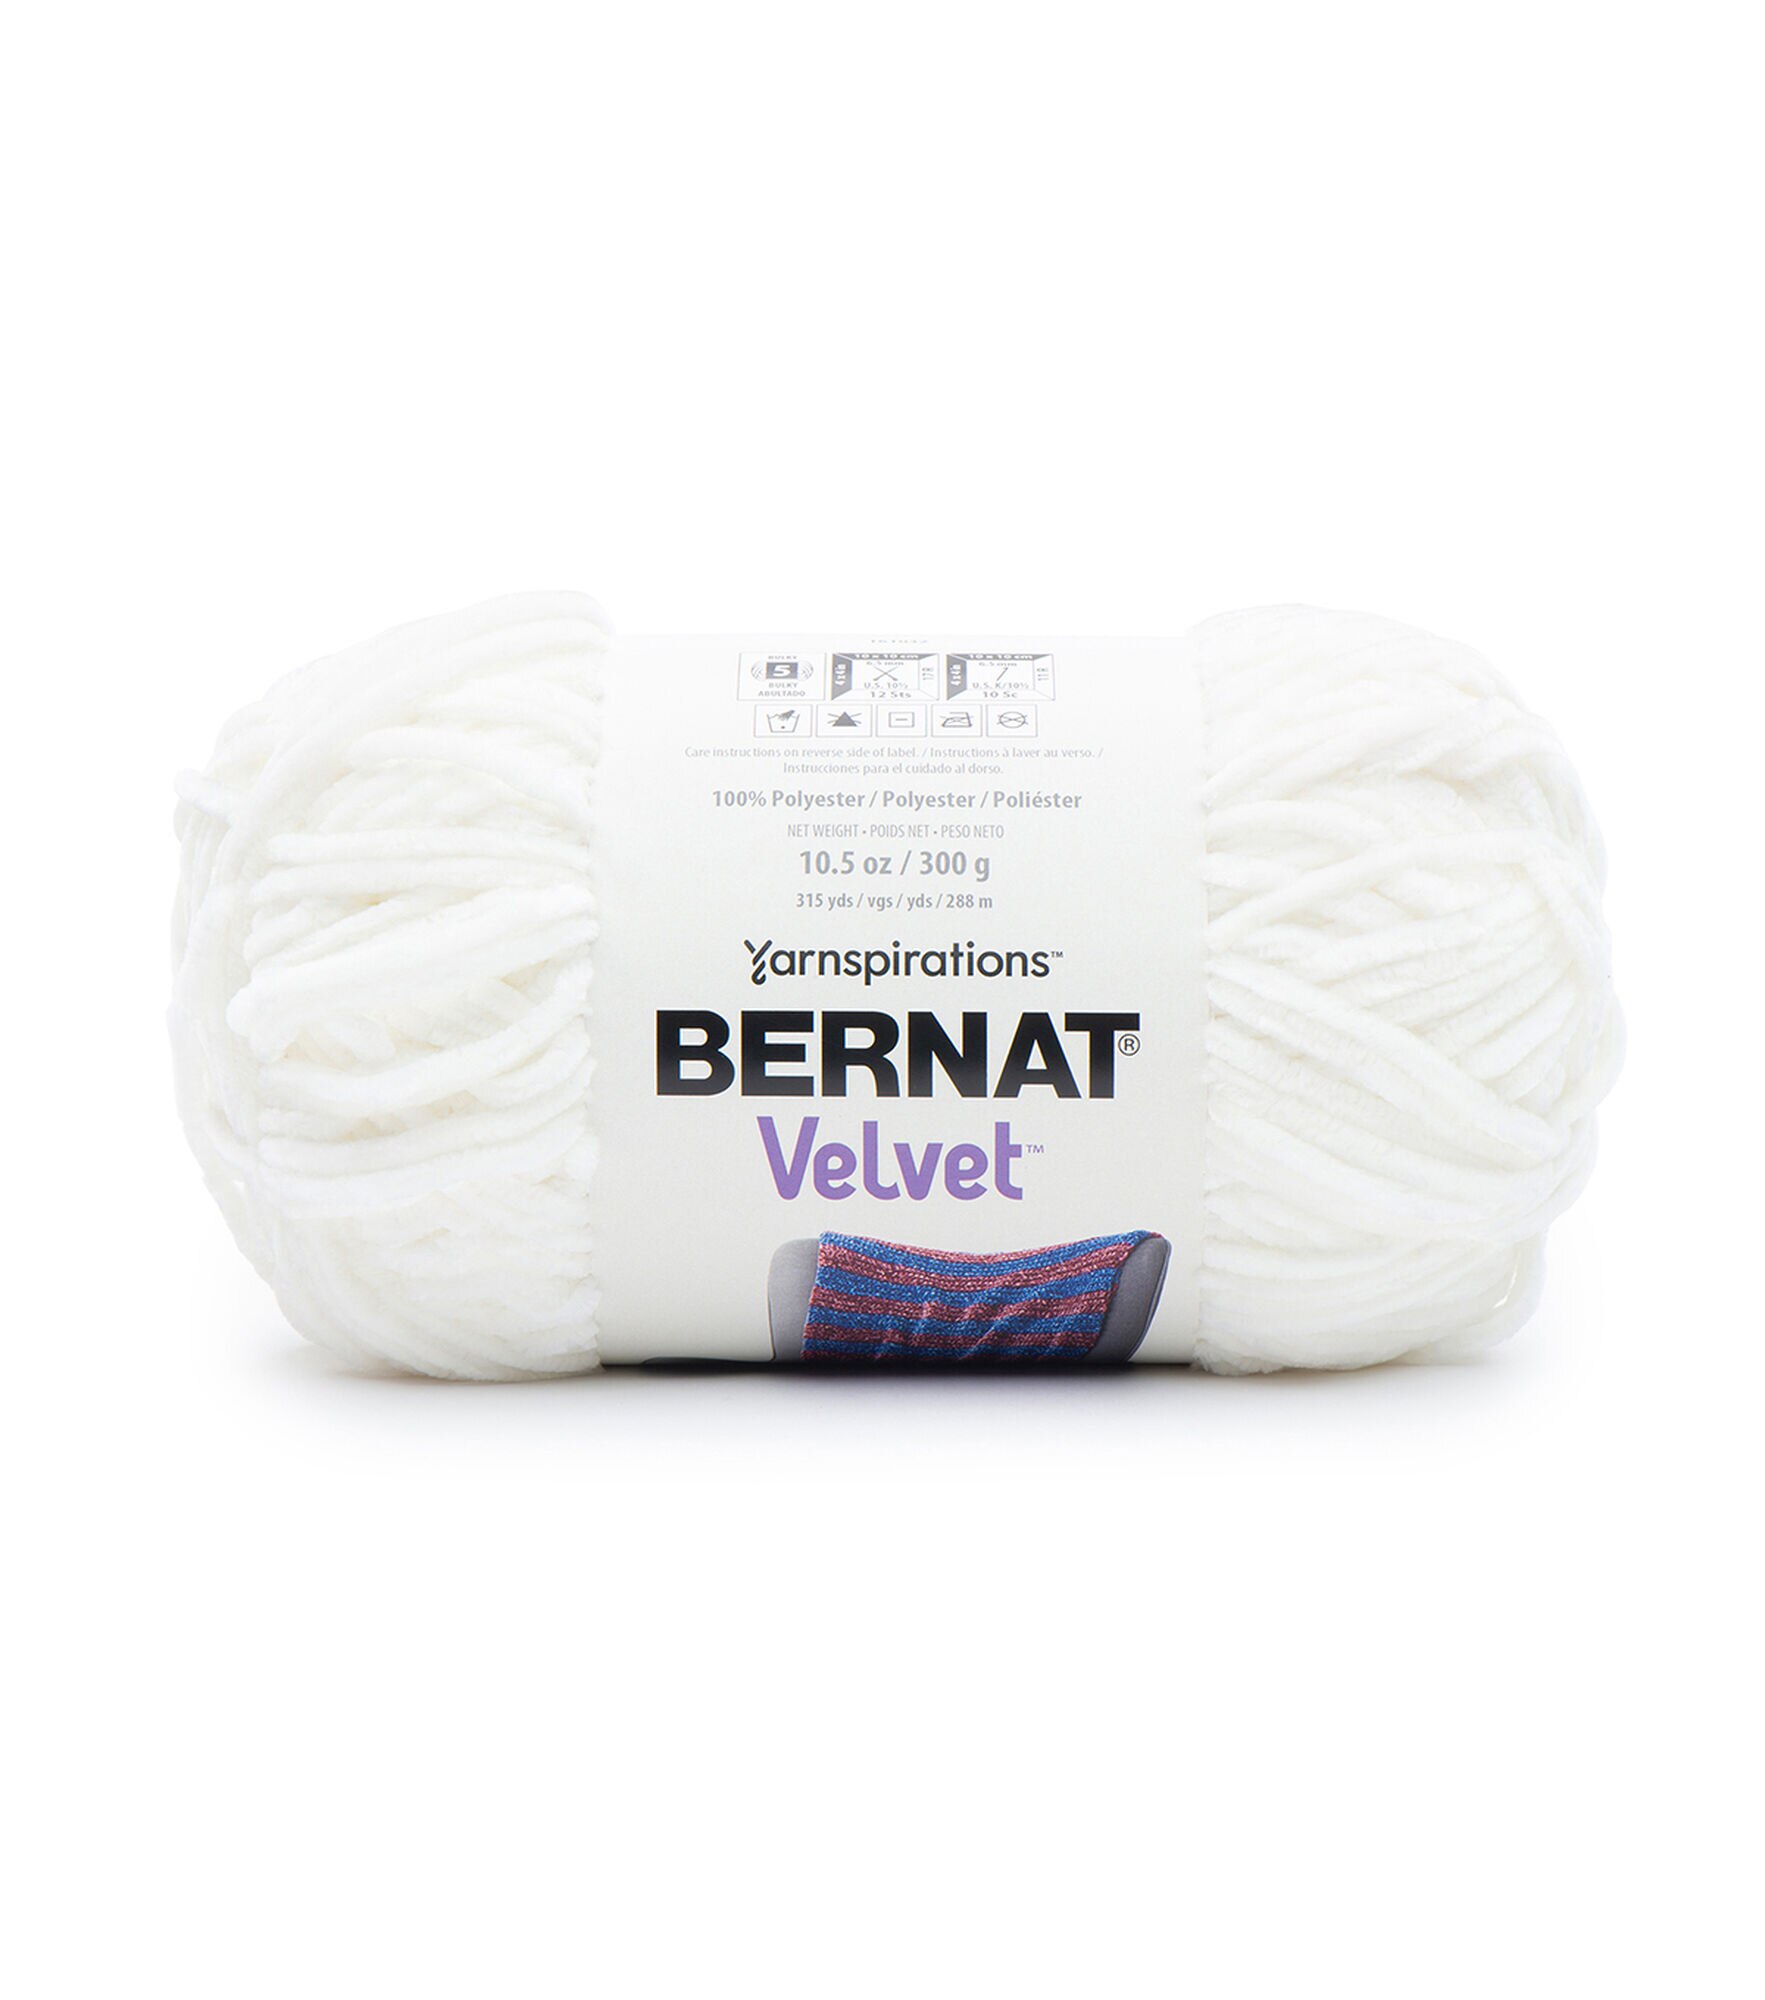 Bernat Baby Velvet Yarn ORANGE WHIP New Free Shipping 